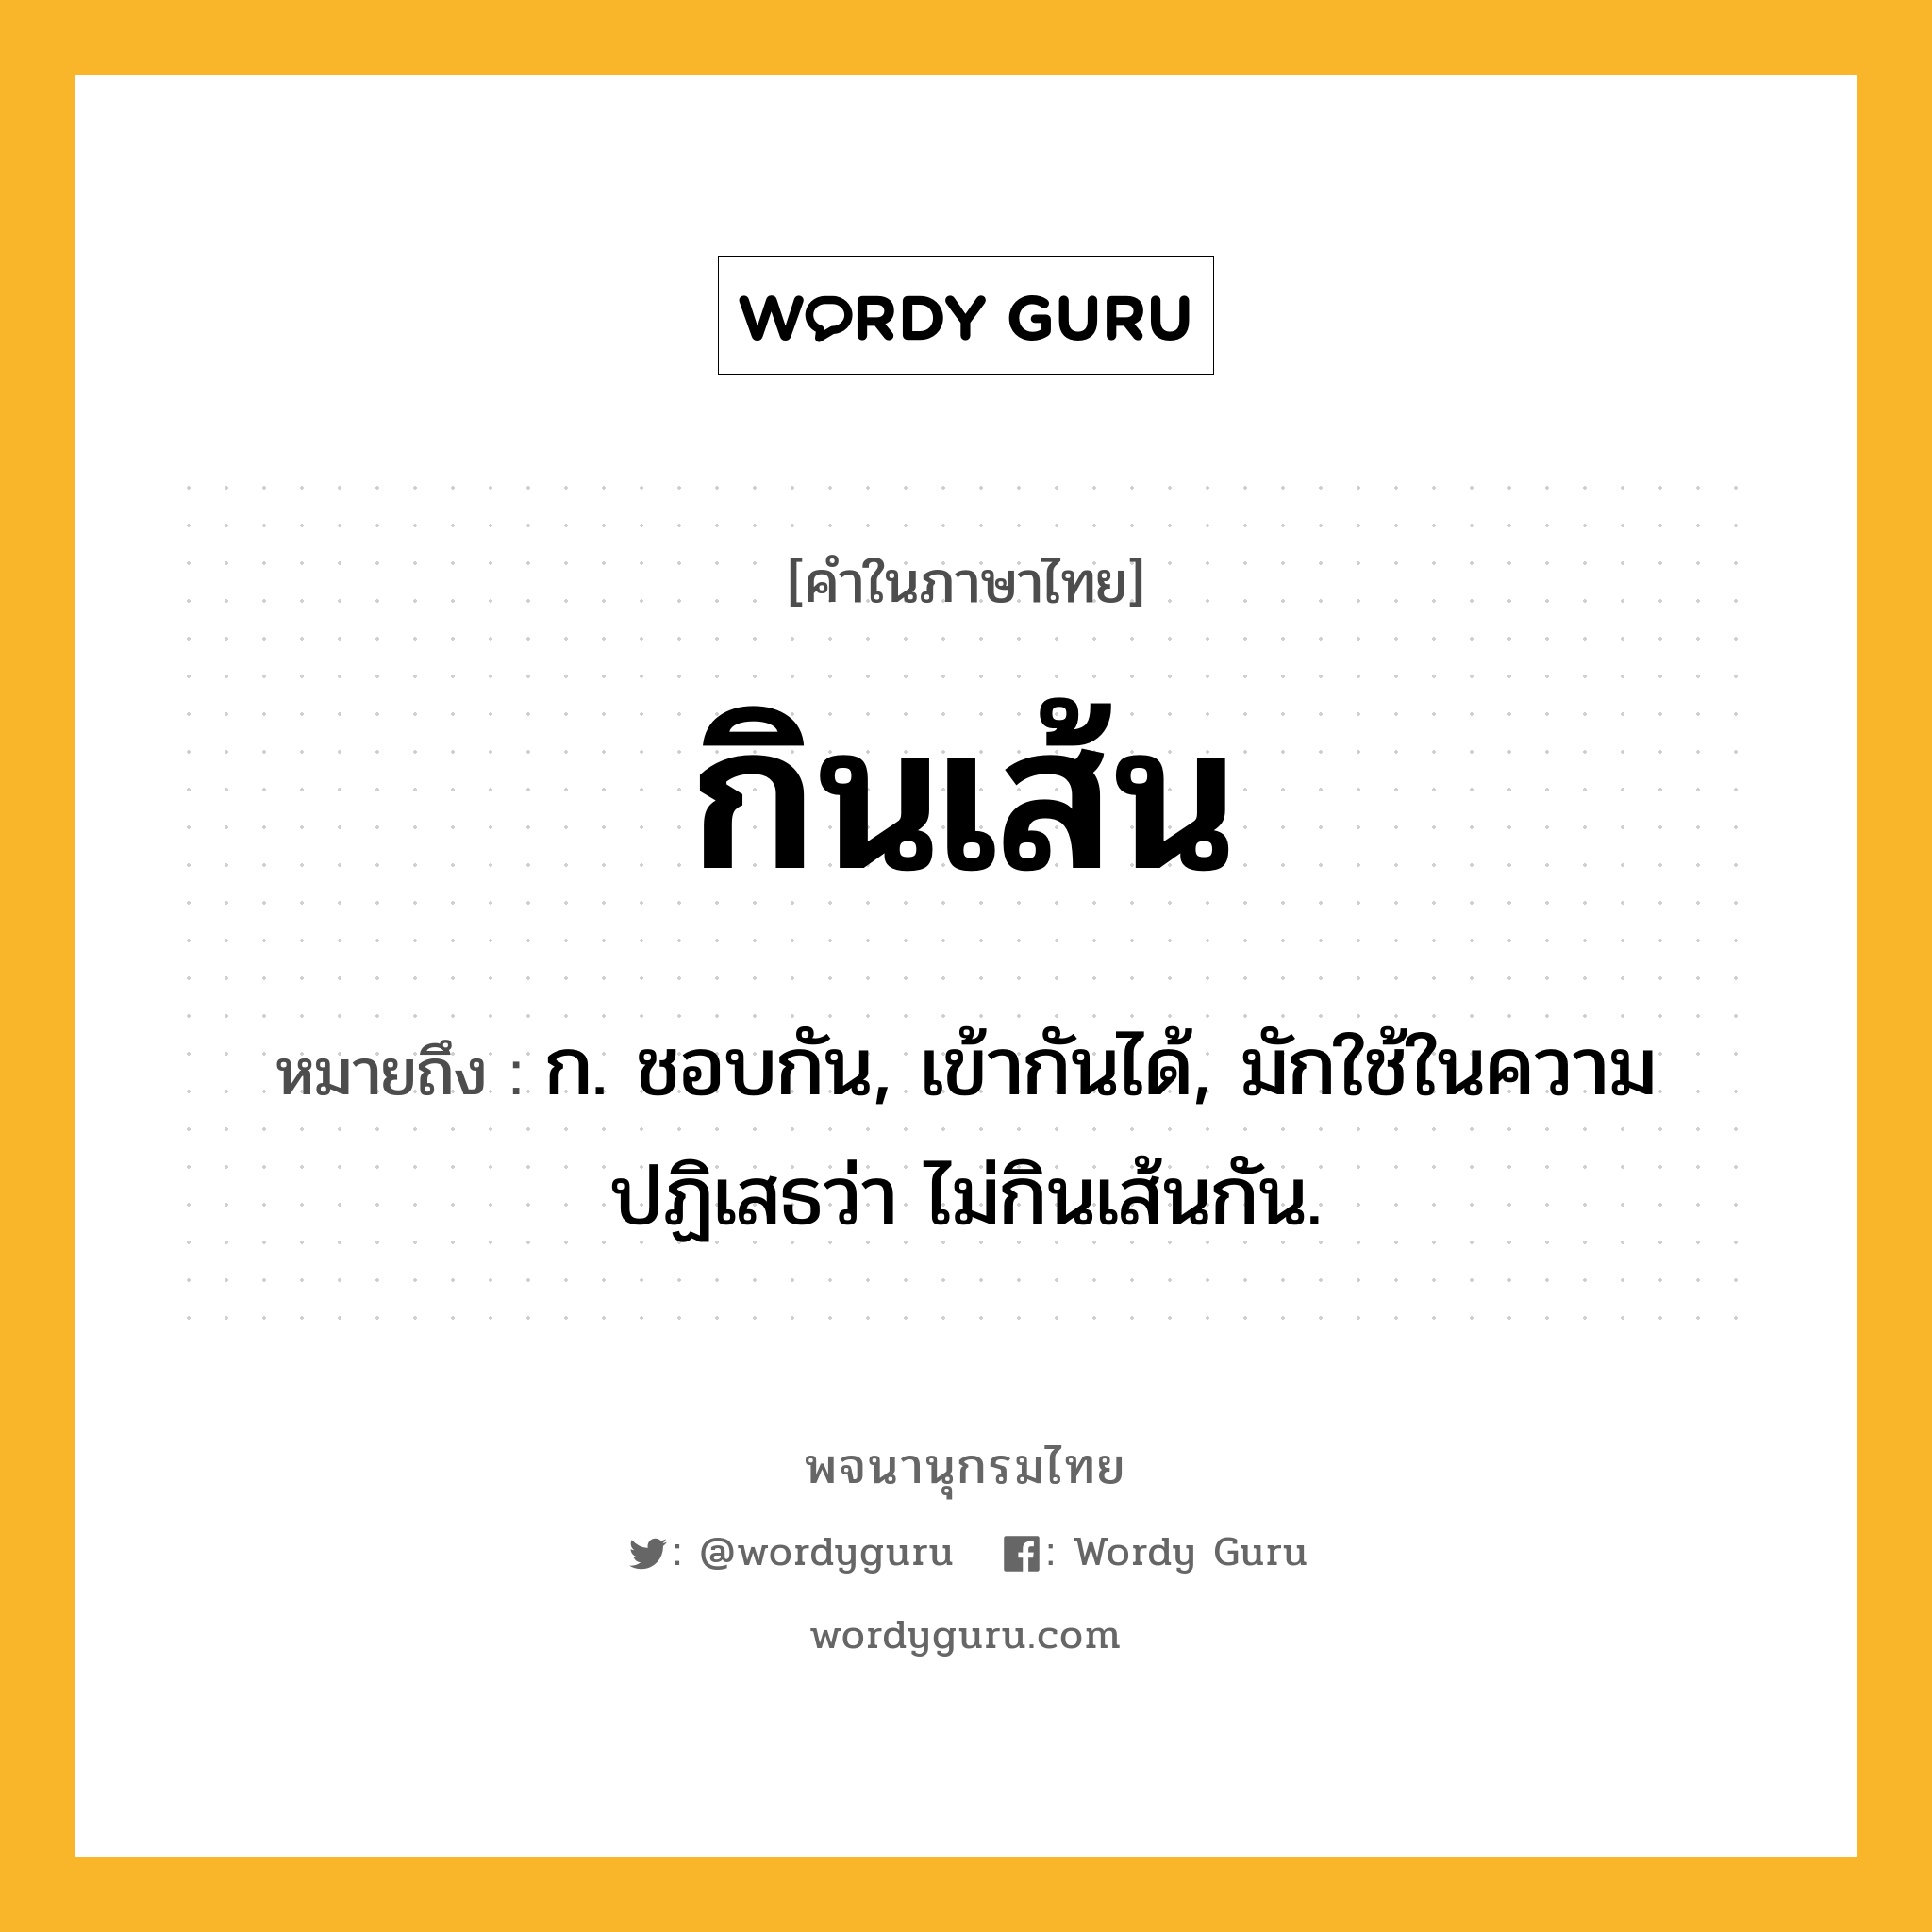 กินเส้น ความหมาย หมายถึงอะไร?, คำในภาษาไทย กินเส้น หมายถึง ก. ชอบกัน, เข้ากันได้, มักใช้ในความปฏิเสธว่า ไม่กินเส้นกัน.